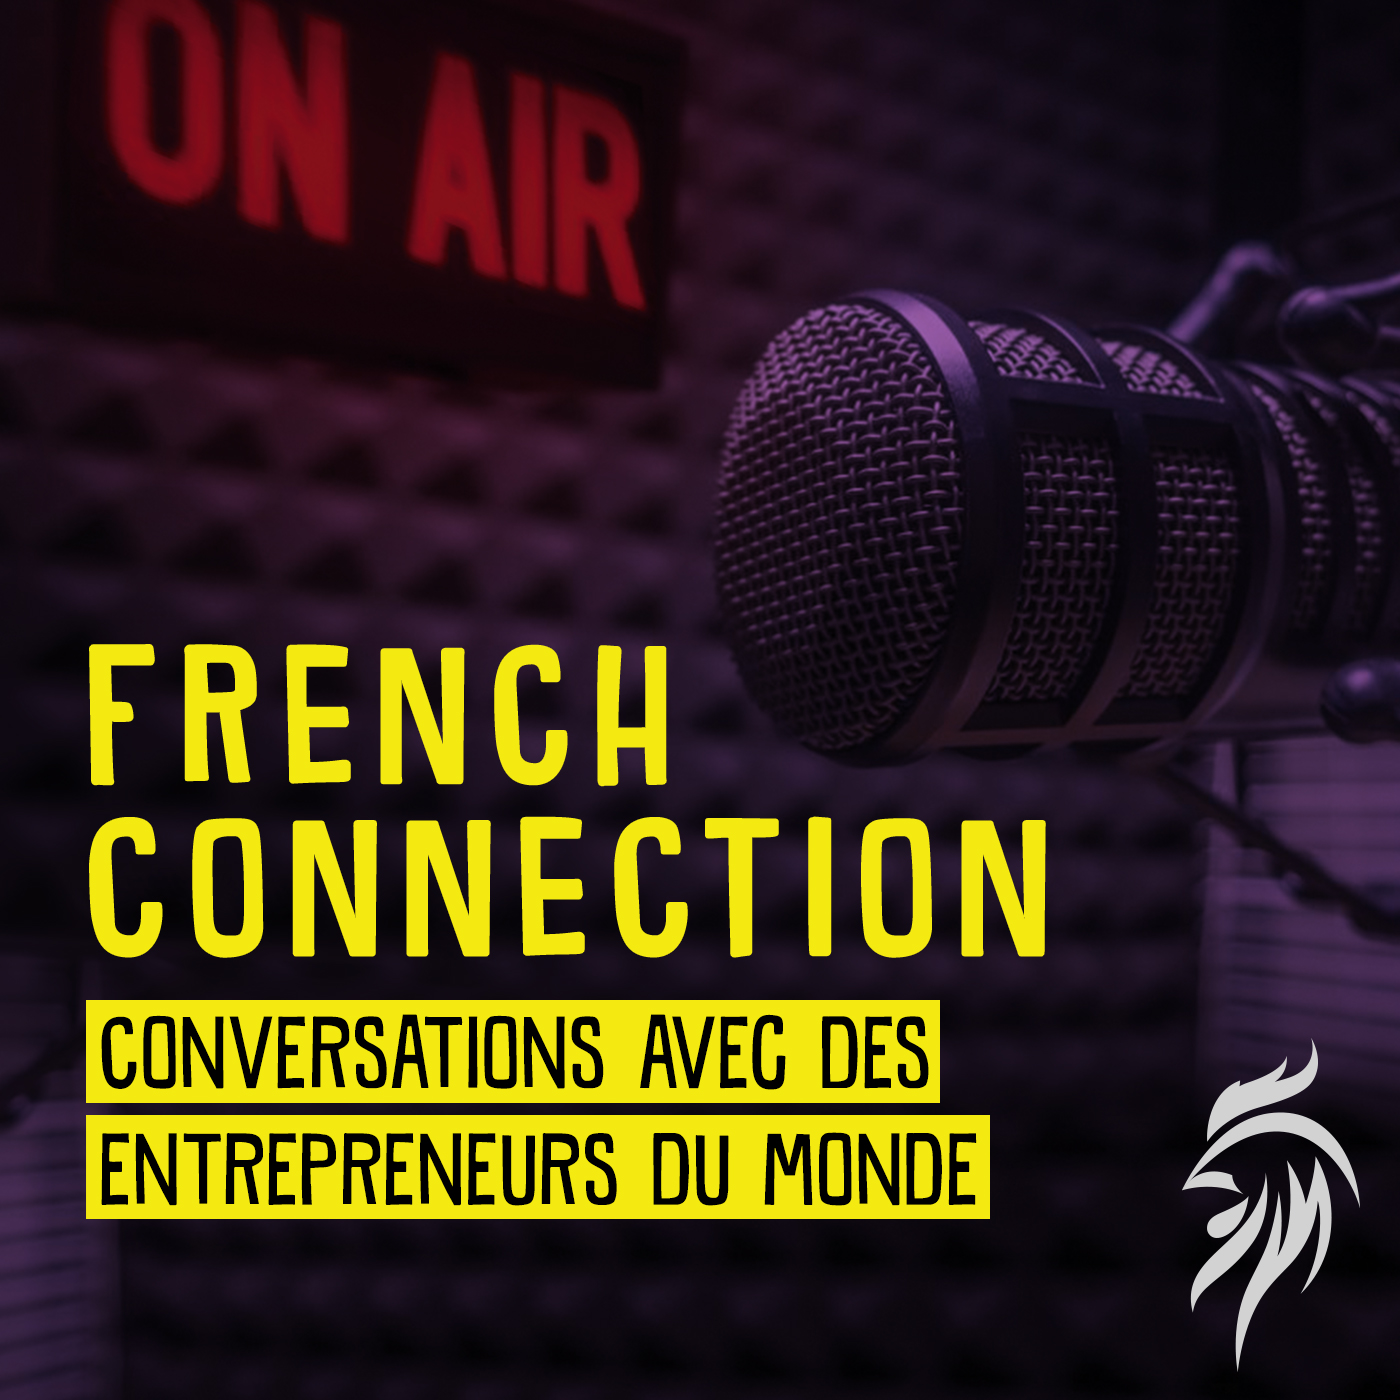 French Connection : conversations avec des entrepreneurs du monde